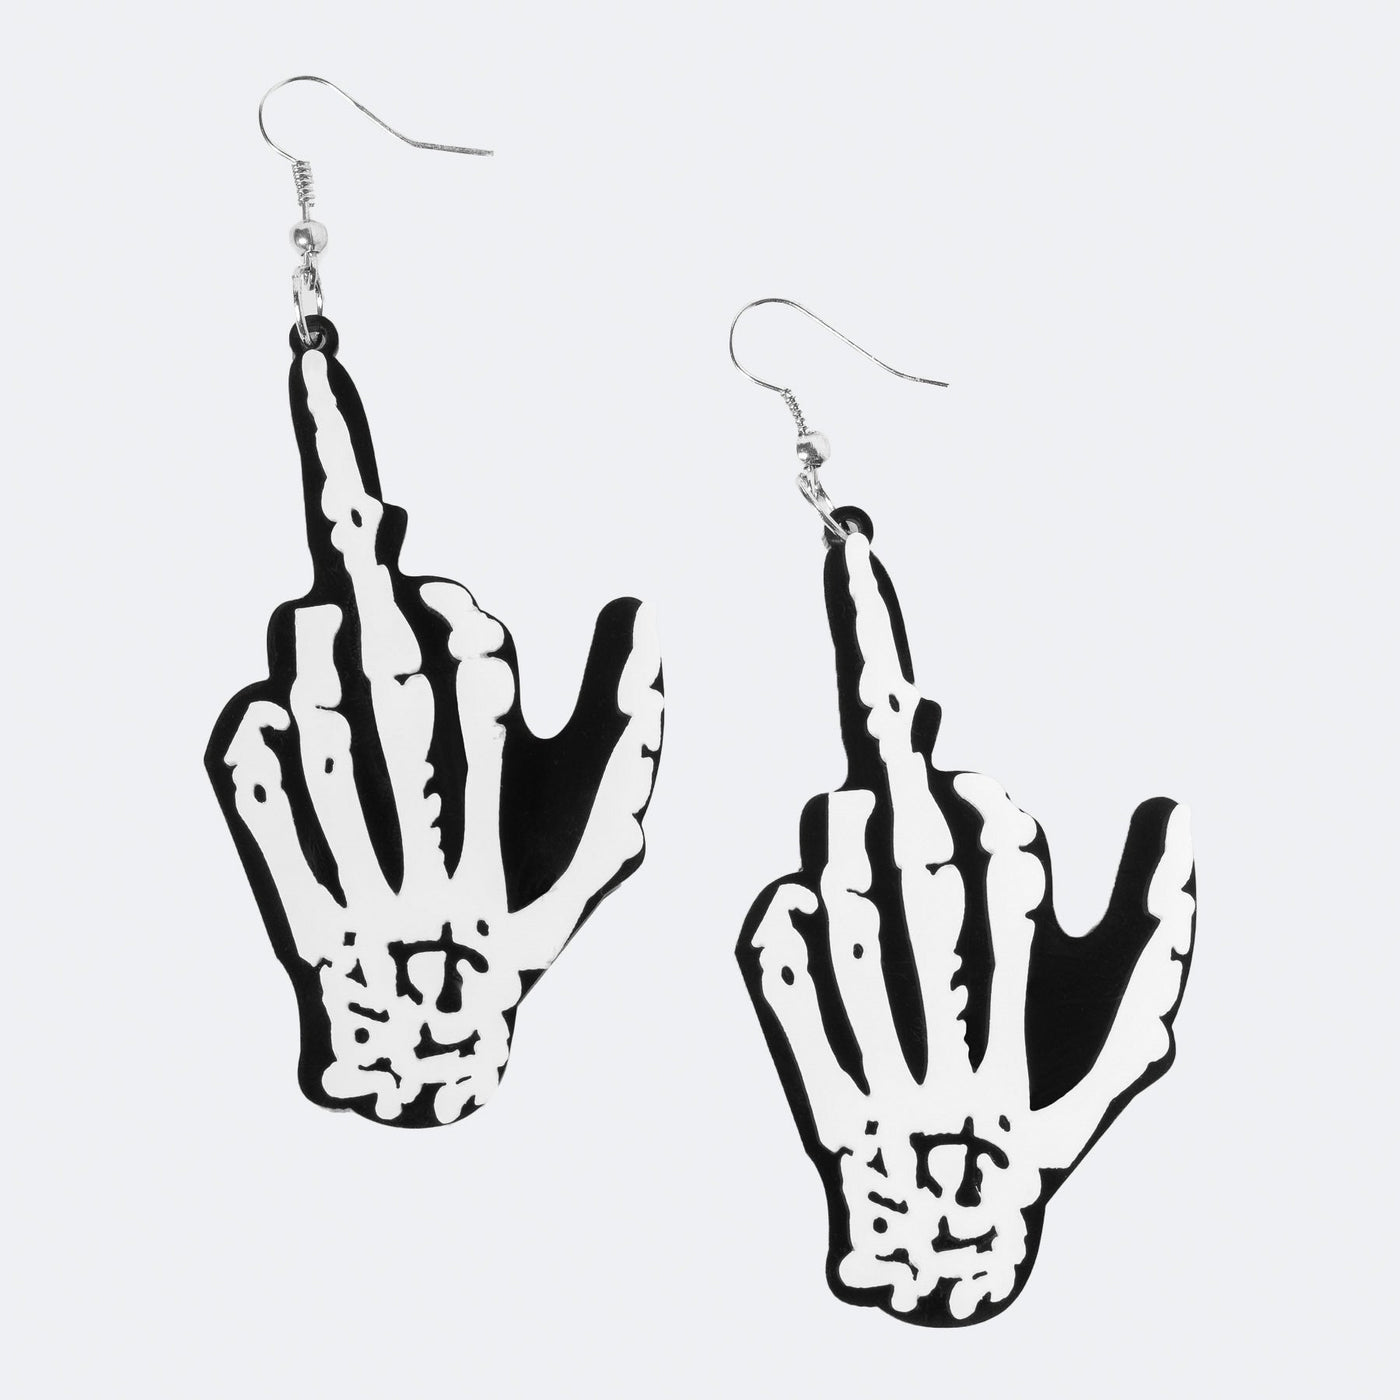 Skeleton Fingers earrings